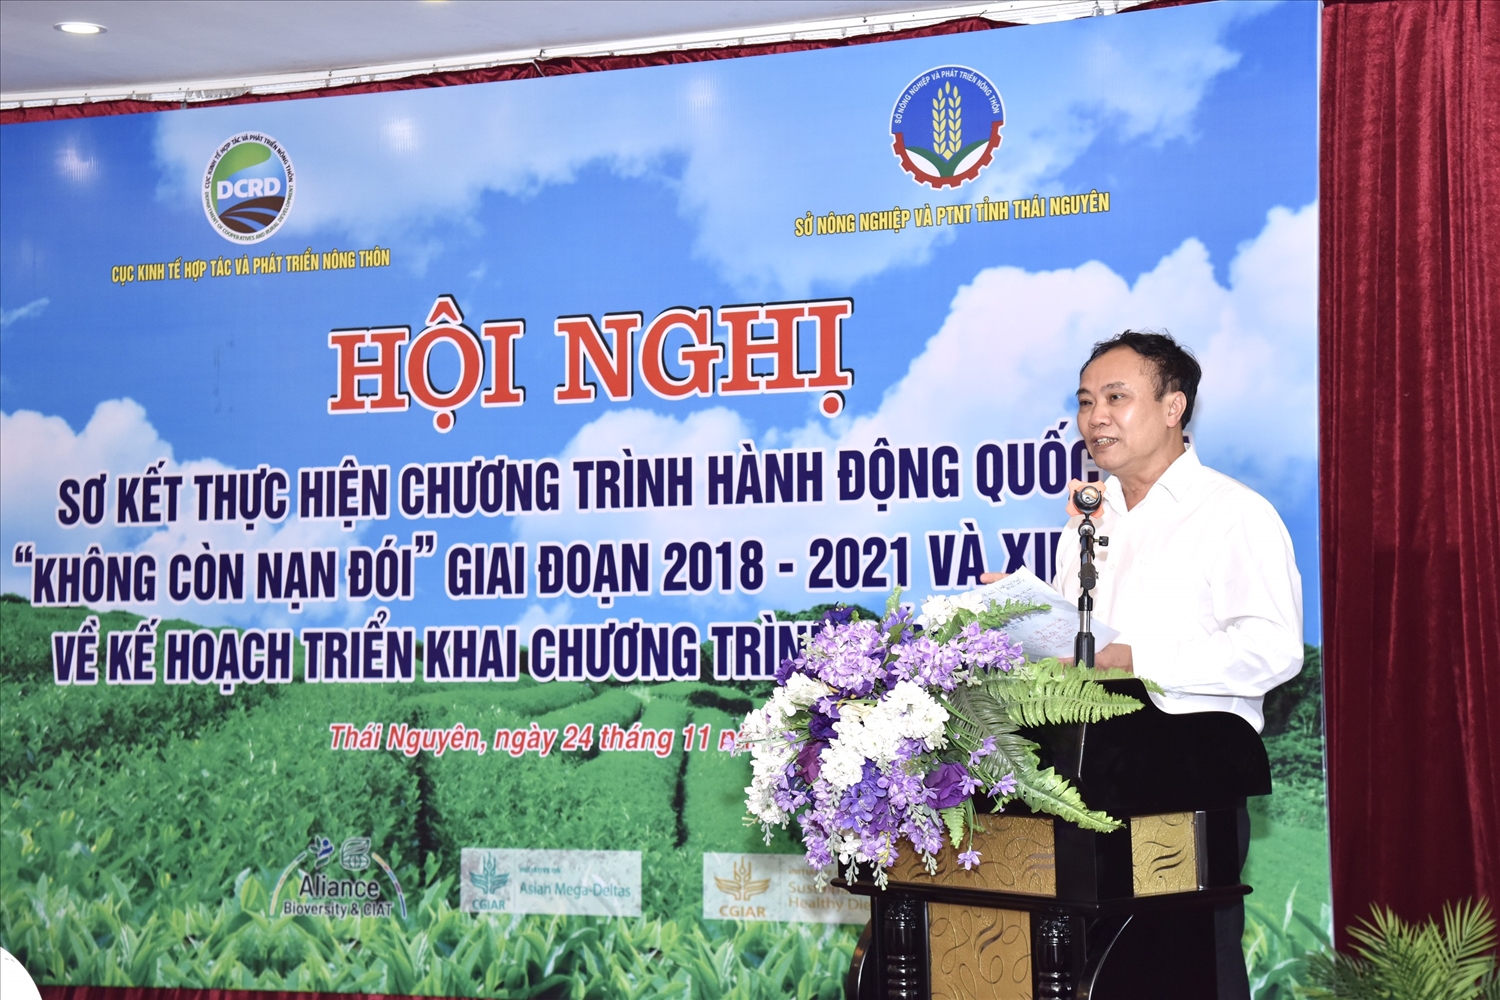 Ông Lê Đức Thịnh, Cục trưởng Cục Kinh tế Hợp tác và Phát triển nông thôn, chia sẻ tại Hội nghị sơ kết ngày 24/11/2022.